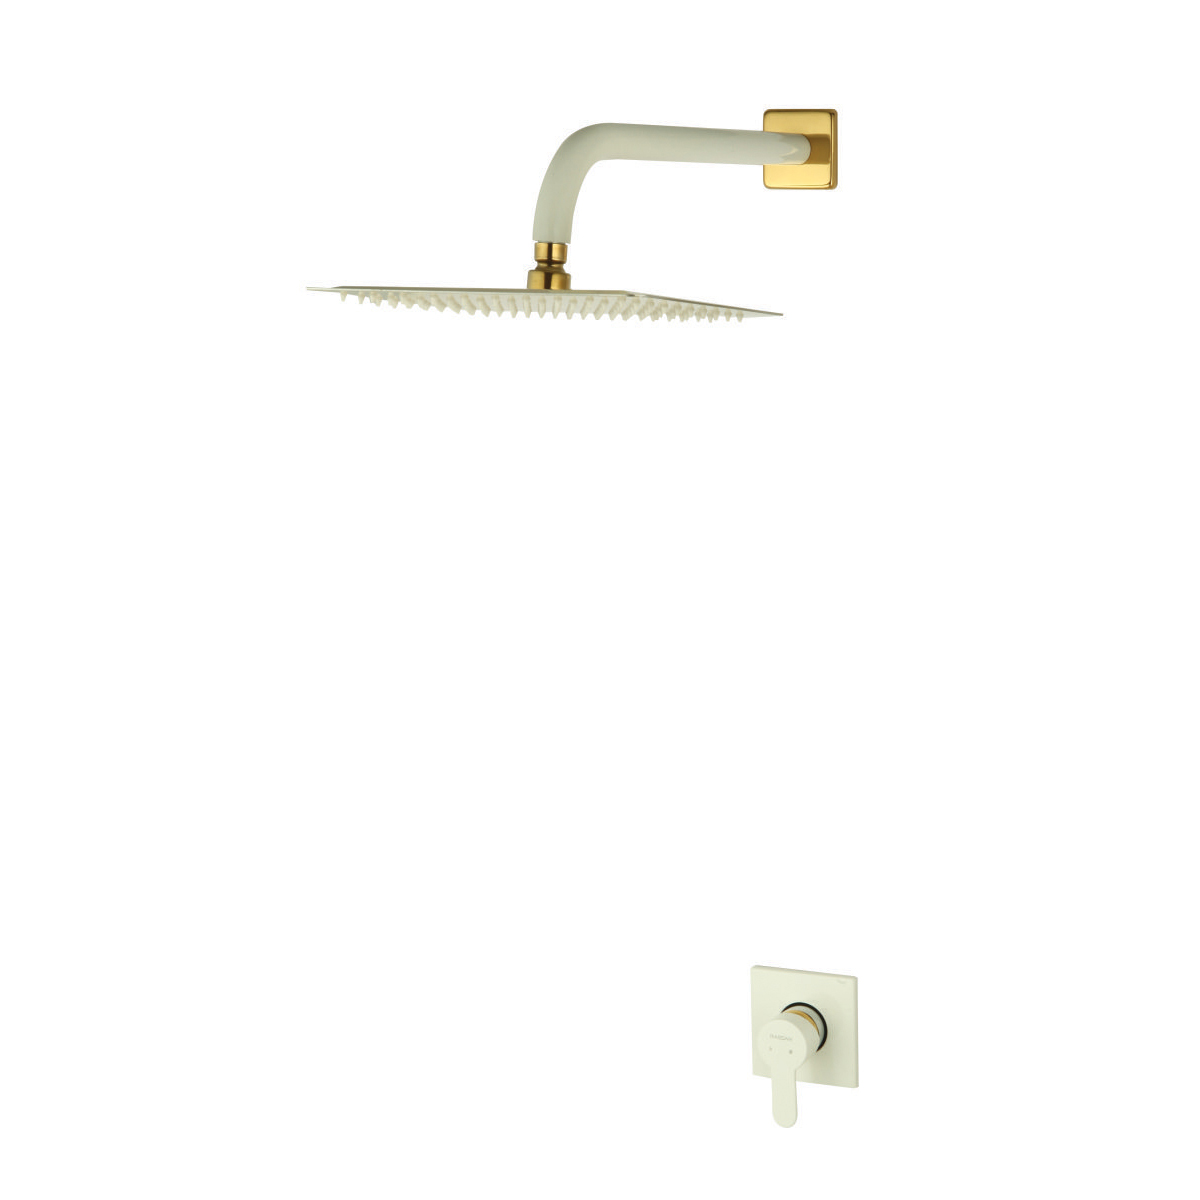 شیر حمام توکار ویوات راسان مدل فلت کلاس (3) سفید طلایی